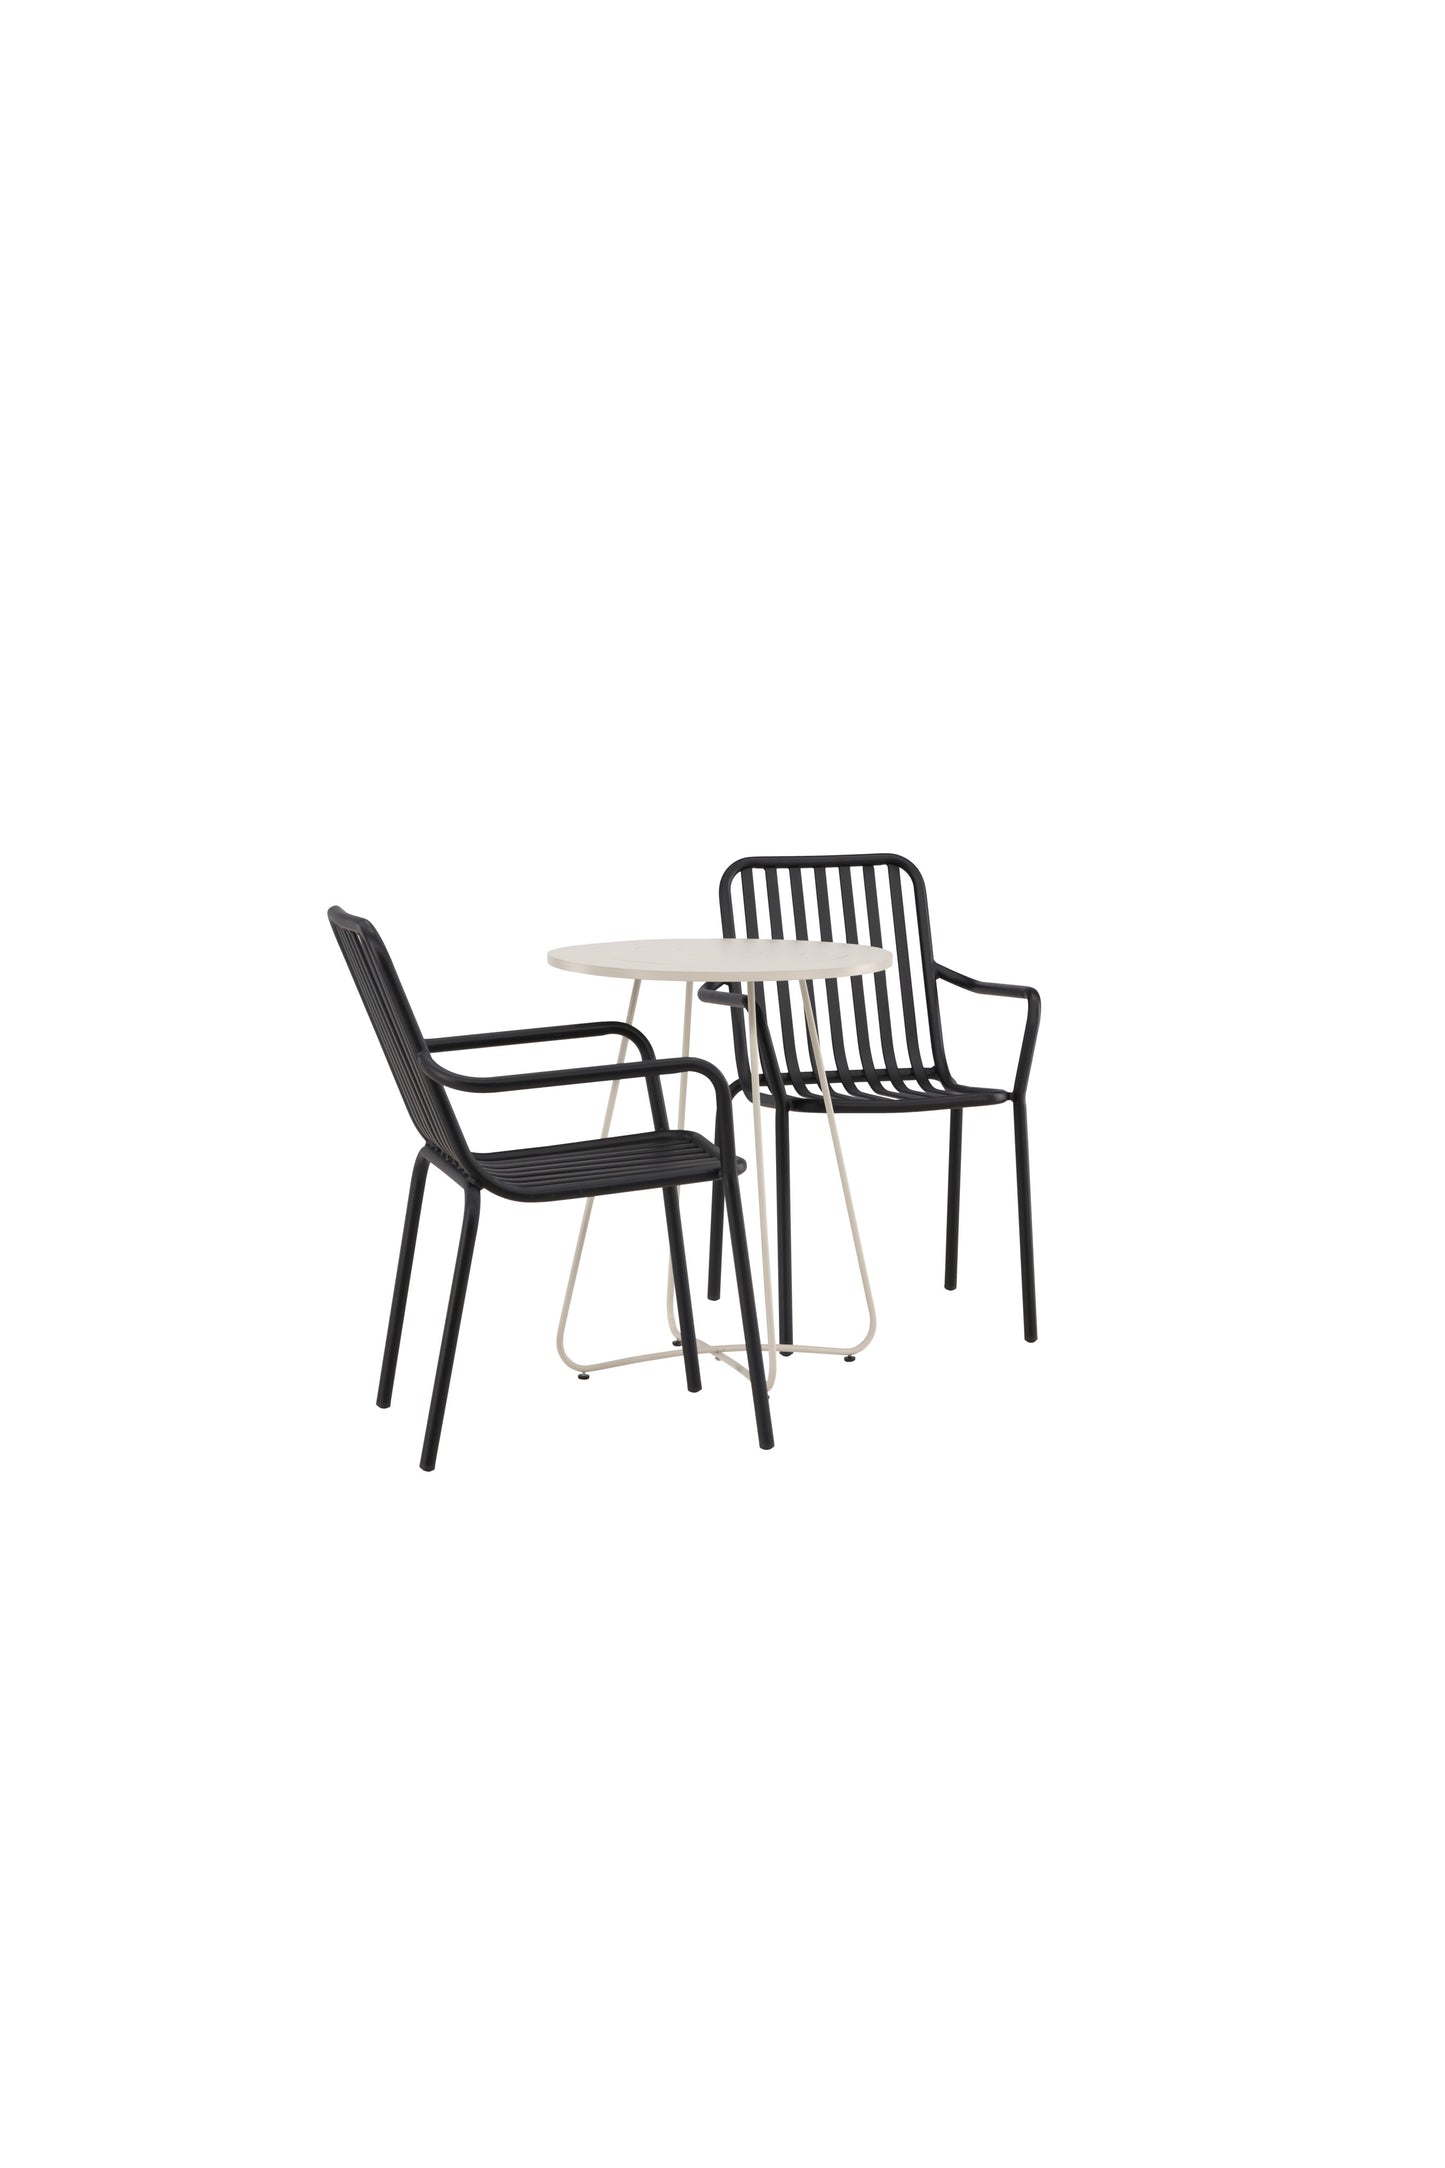 Bacong - Cafébord, Stål - Beige / Rundt ø60** + Pekig stol Aluminium - Sort